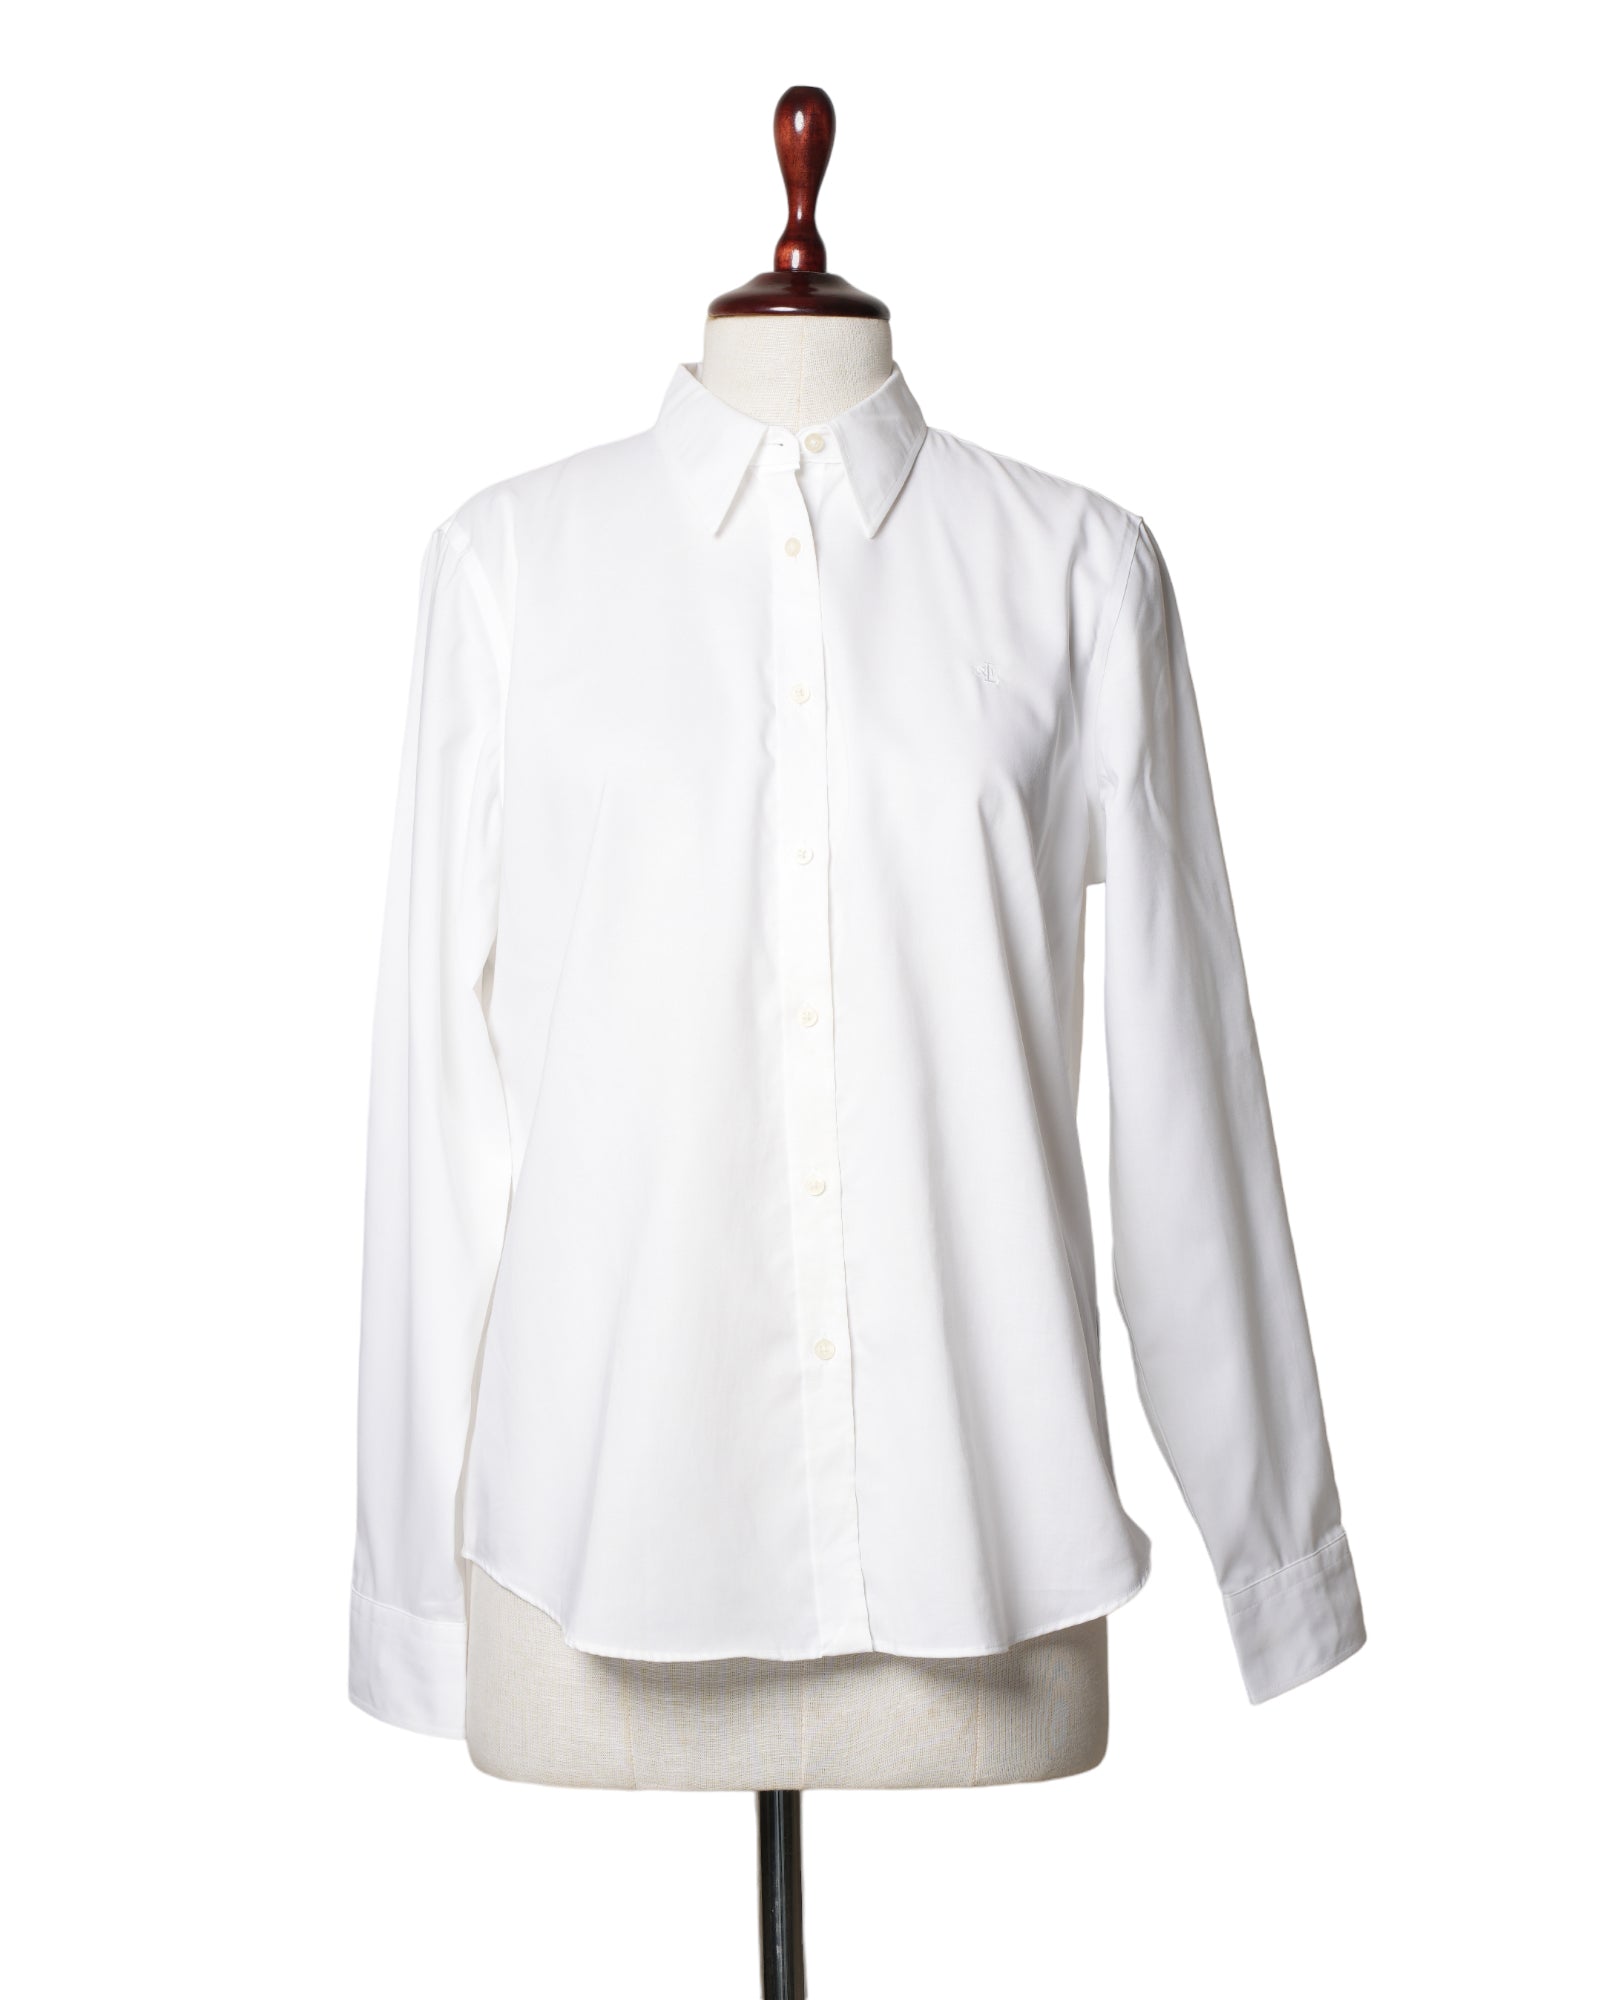 Ralph Lauren White Shirt Full Sleeves